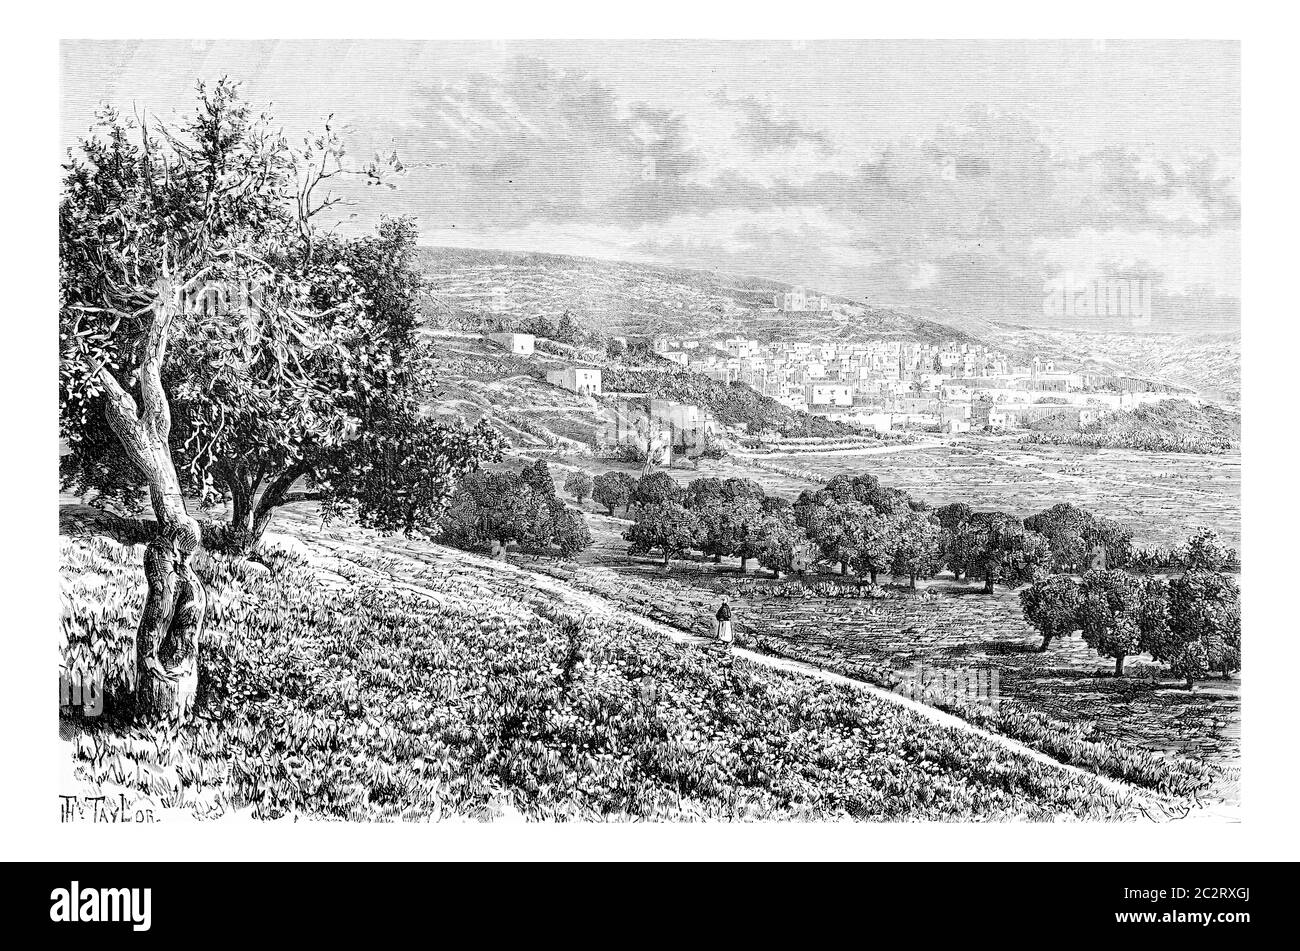 Ville de Nazareth en Israël, illustration gravée d'époque. Le Tour du monde, Journal de voyage, 1881 Banque D'Images